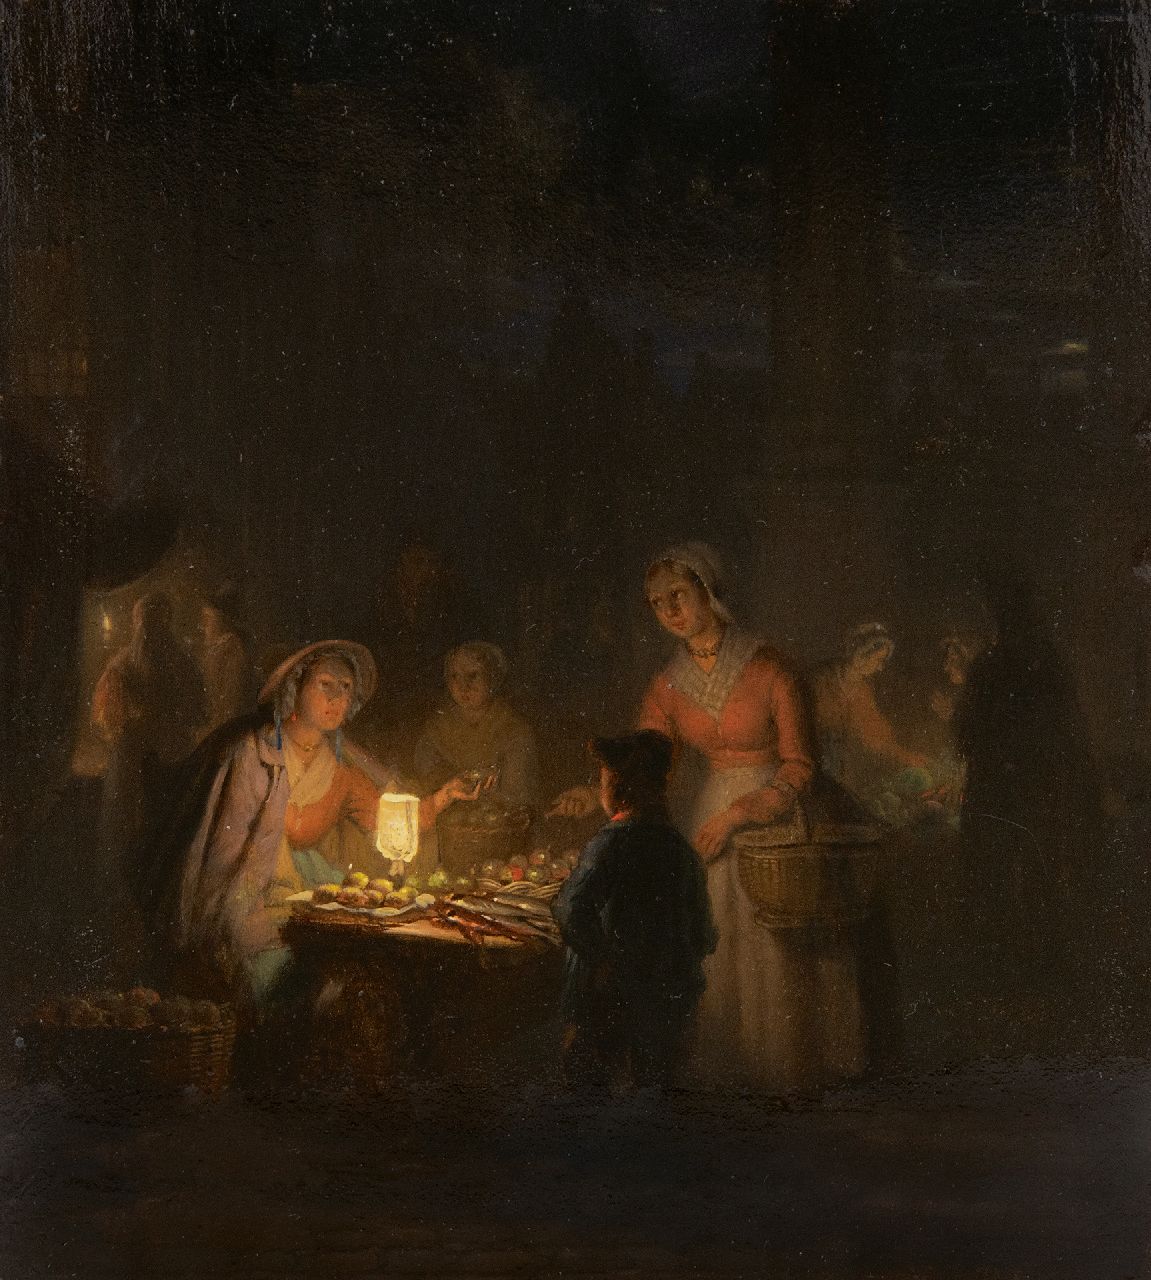 Grootvelt J.H. van | Jan Hendrik van Grootvelt, Op de avondmarkt, olieverf op paneel 17,7 x 15,6 cm, gesigneerd verso en verso gedateerd 1841